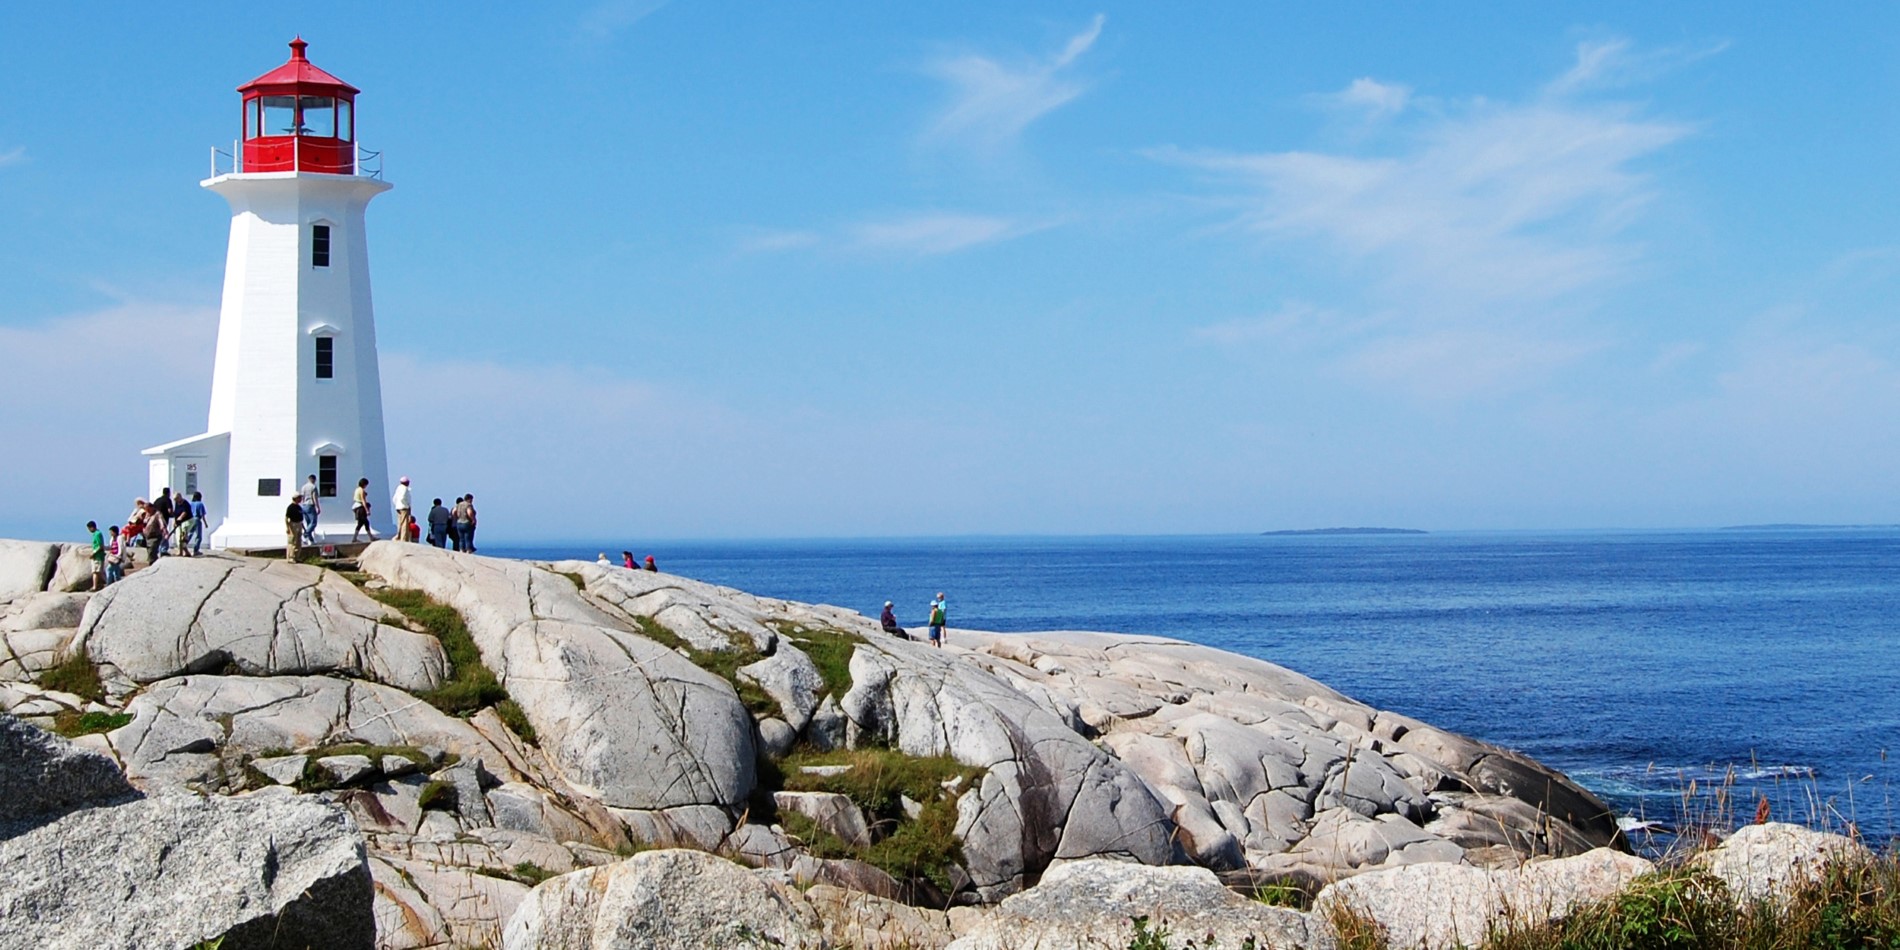 En staty av en person som sitter på en klippa nära havet